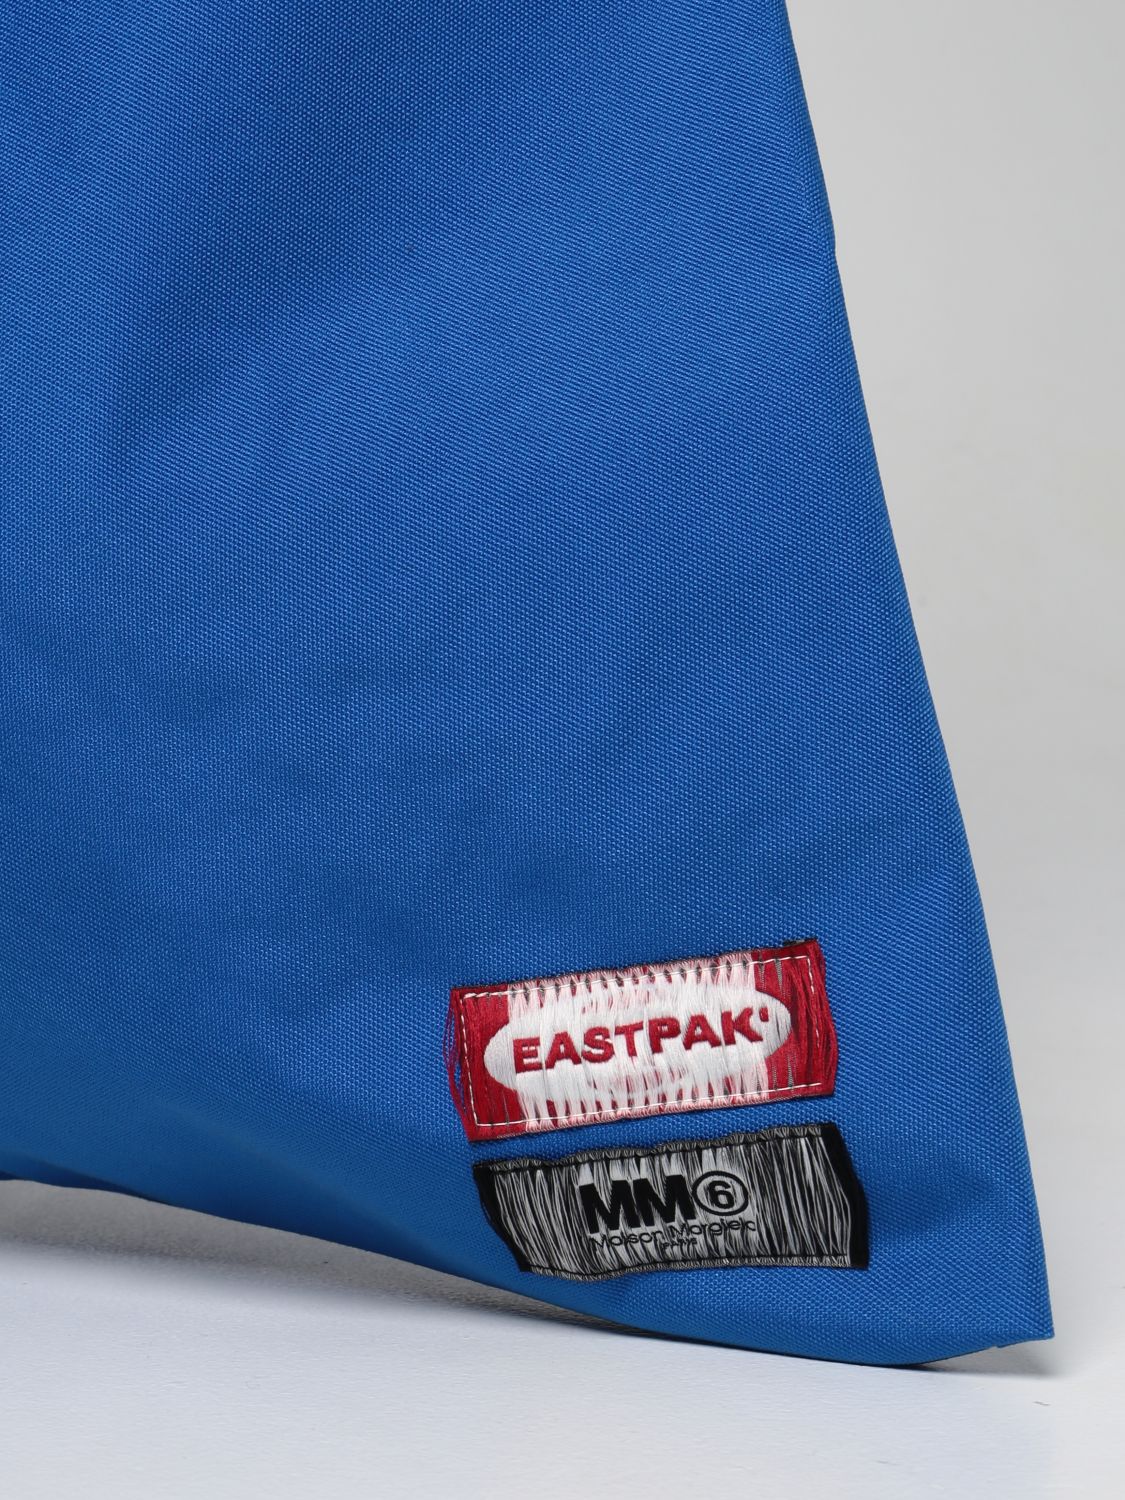 Bags Eastpak: Japanese Mm6 Maison Margiela x Eastpak nylon bag blue 3